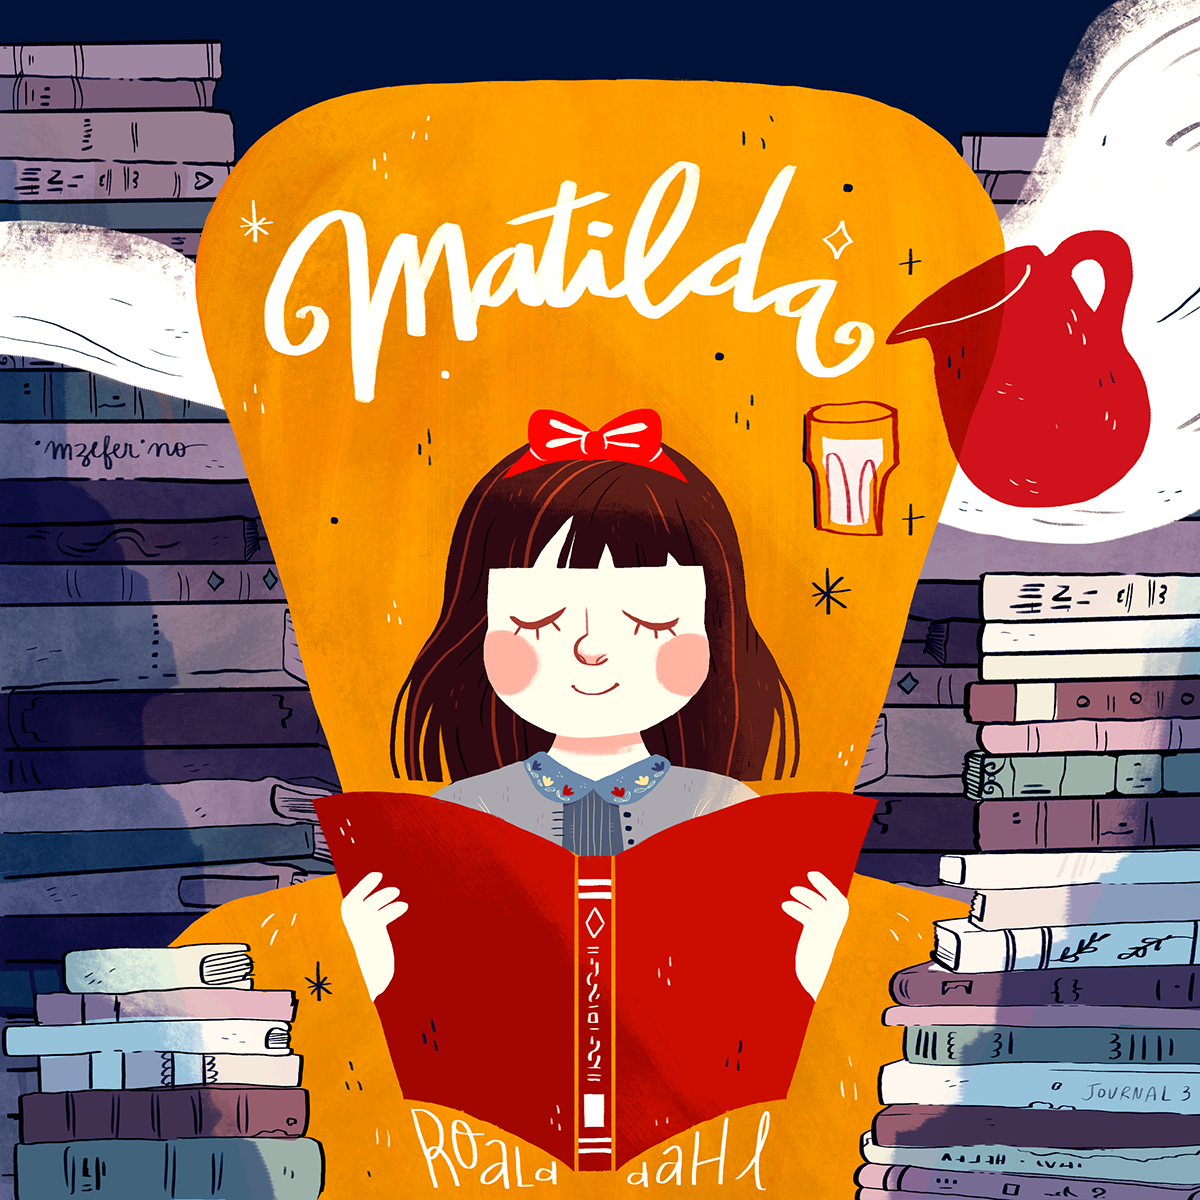 Matilda / cover redesign. Ilustrações, Matilda, Painéis de pintura